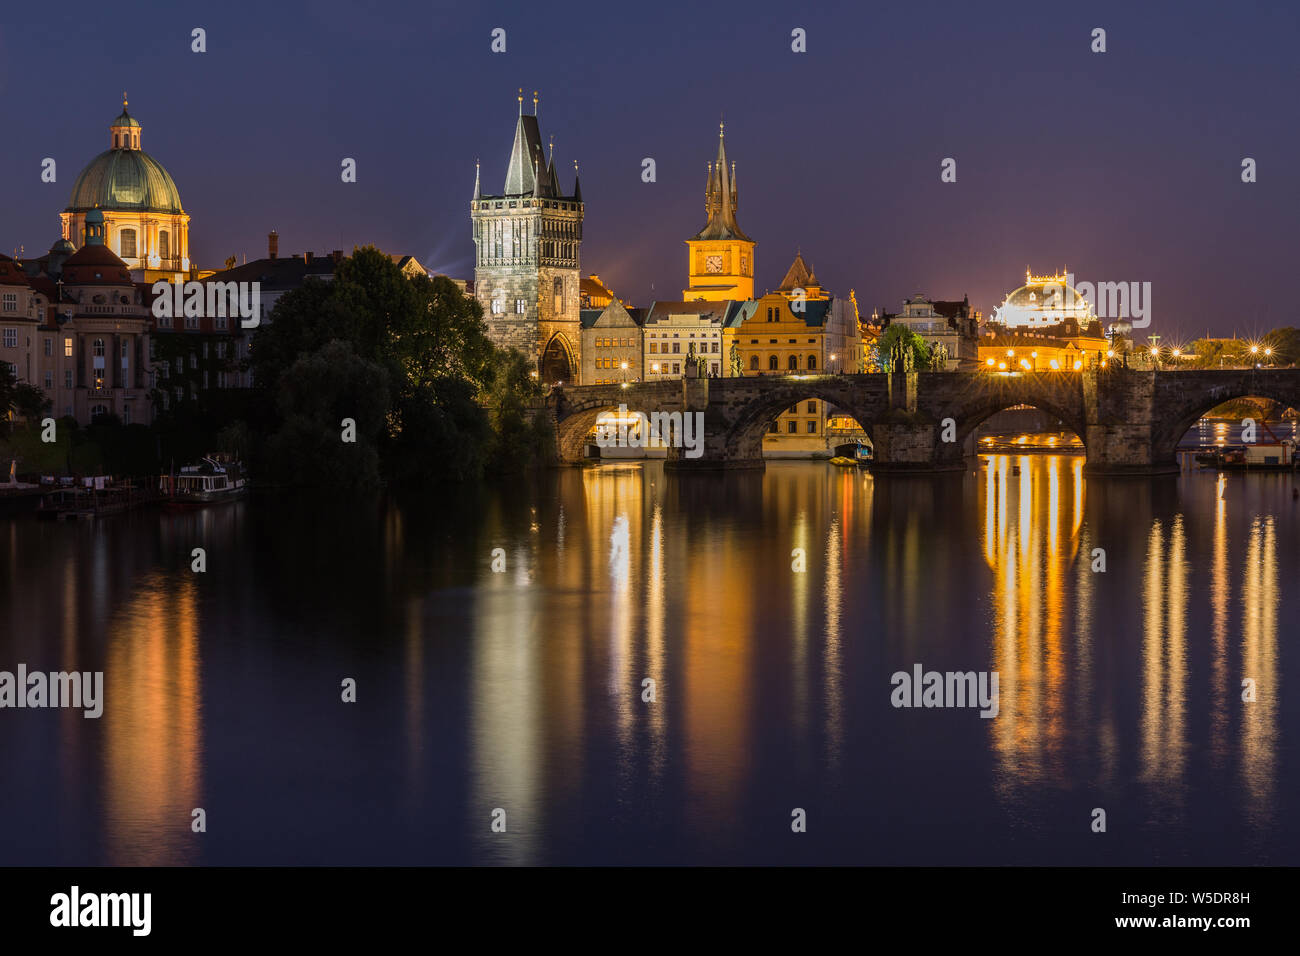 Charles Bridge bei Nacht in Prag. Turm und die historische steinerne Brücke über die Moldau mit Beleuchtung zwischen der Altstadt und der Kleinseite. Reflexionen Stockfoto